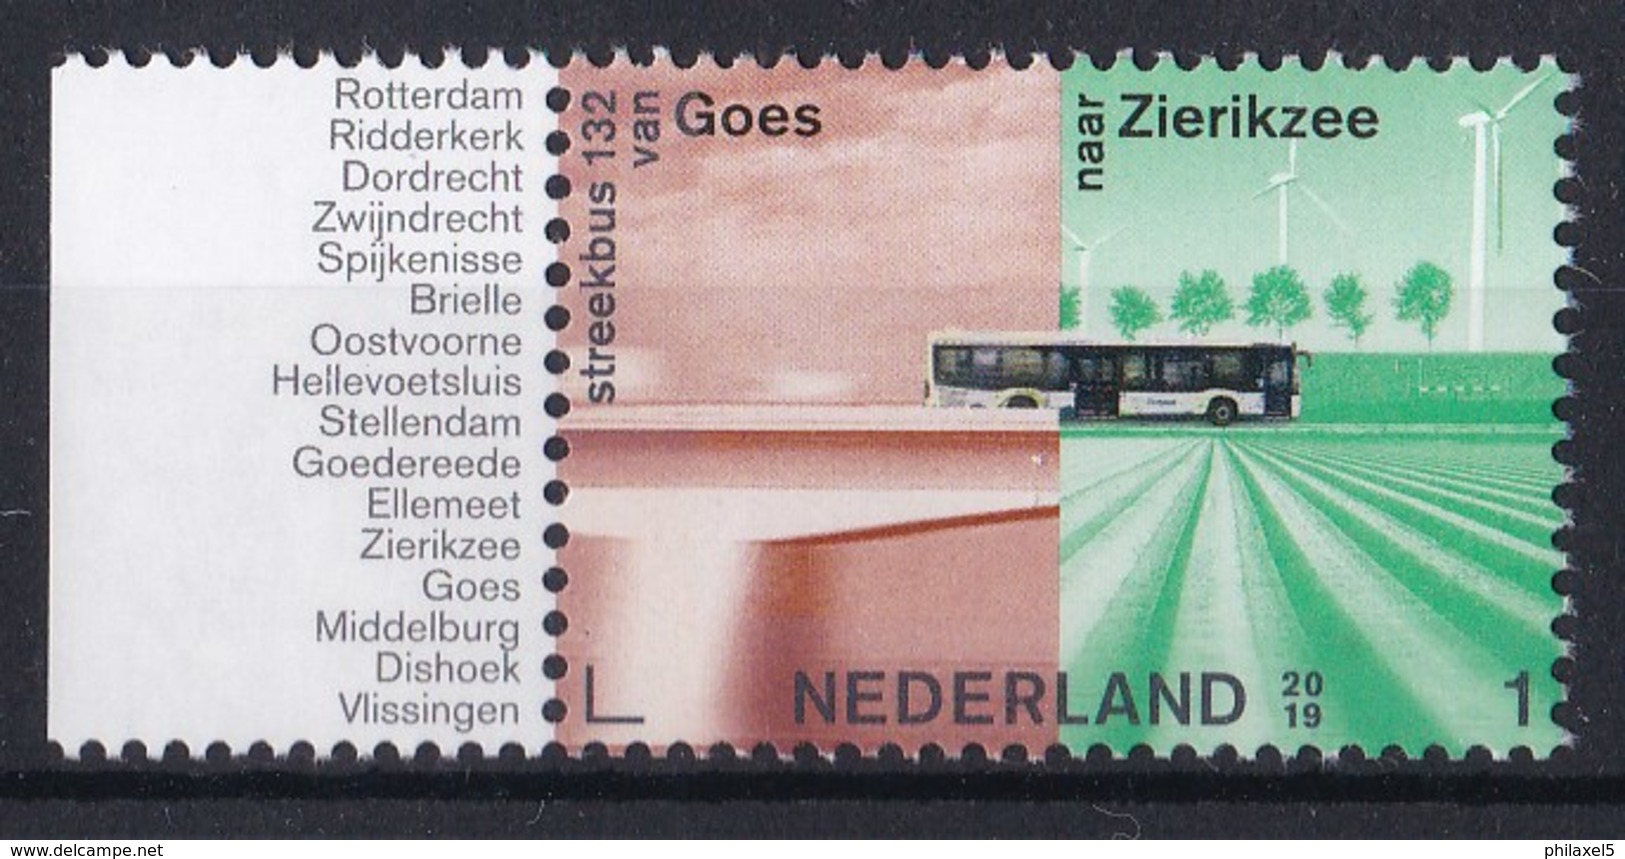 Nederland - 19 Augustus 2019 - Openbaar Vervoer In Nederland - Streekbus 132 Goes-Zierikzee - MNH - Bus